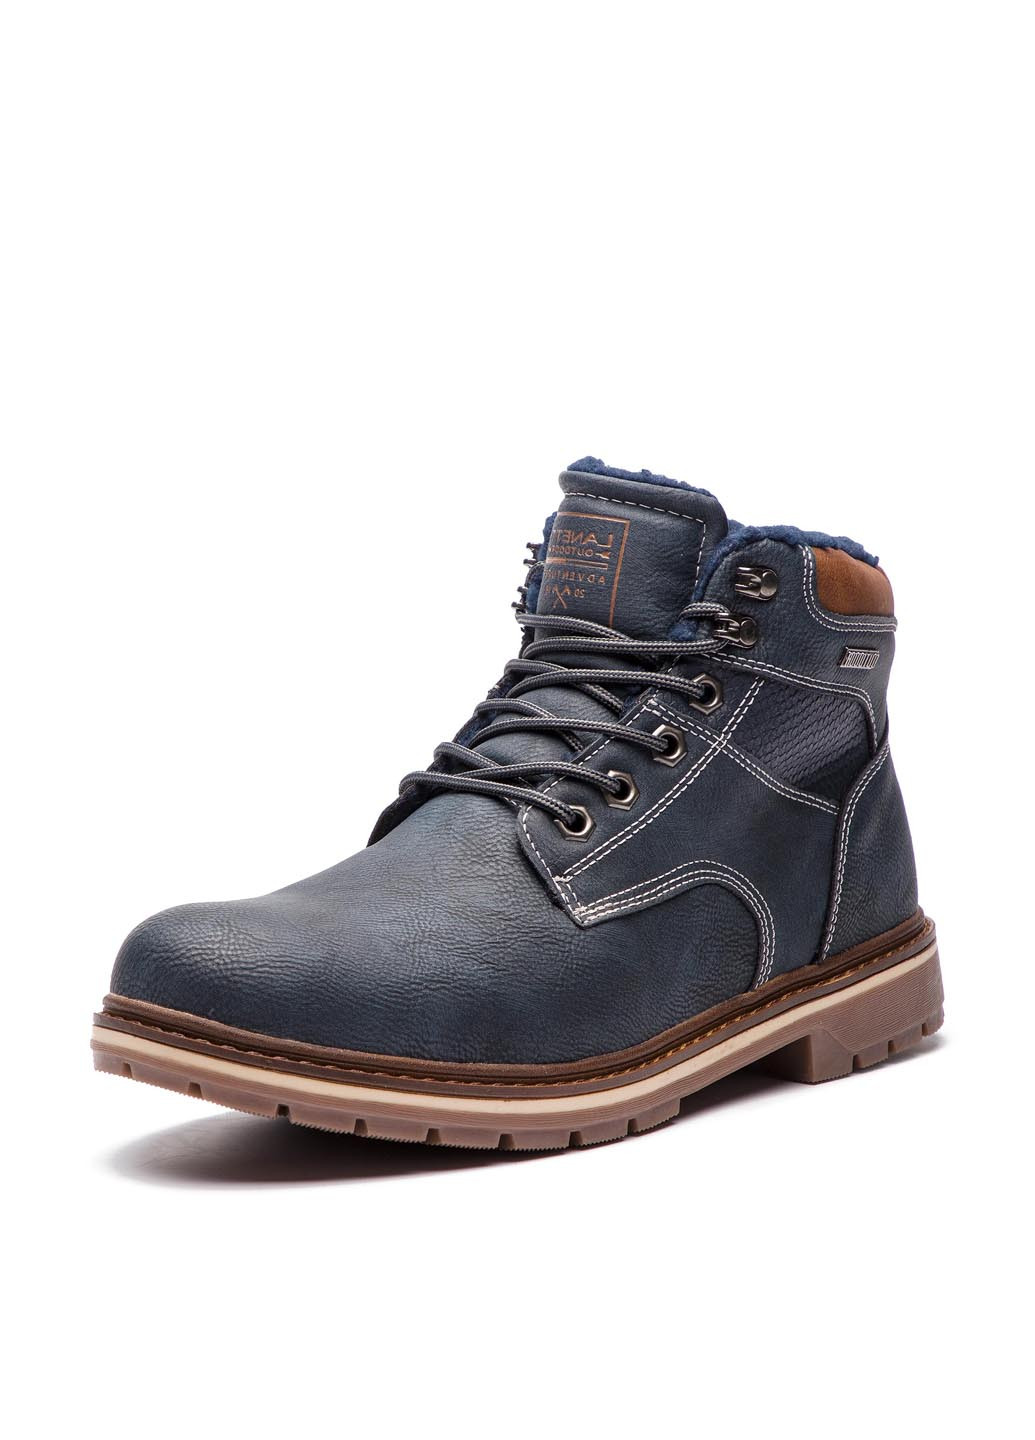 Темно-синие осенние черевики smp07-171041-01 Lanetti